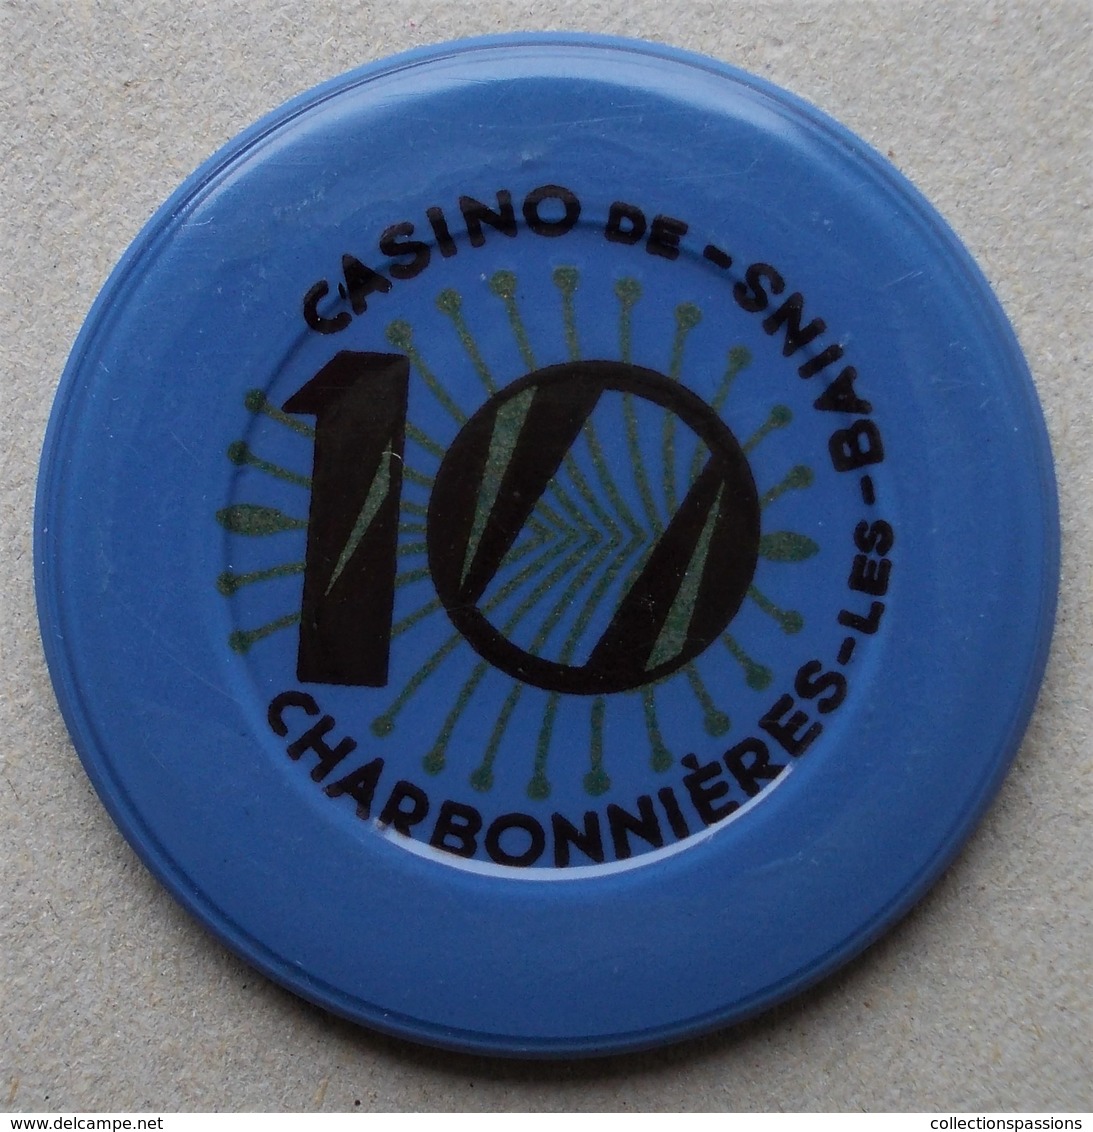 CHARBONNIERES - Ancien Jeton De Casino De Charbonnières - - Casino